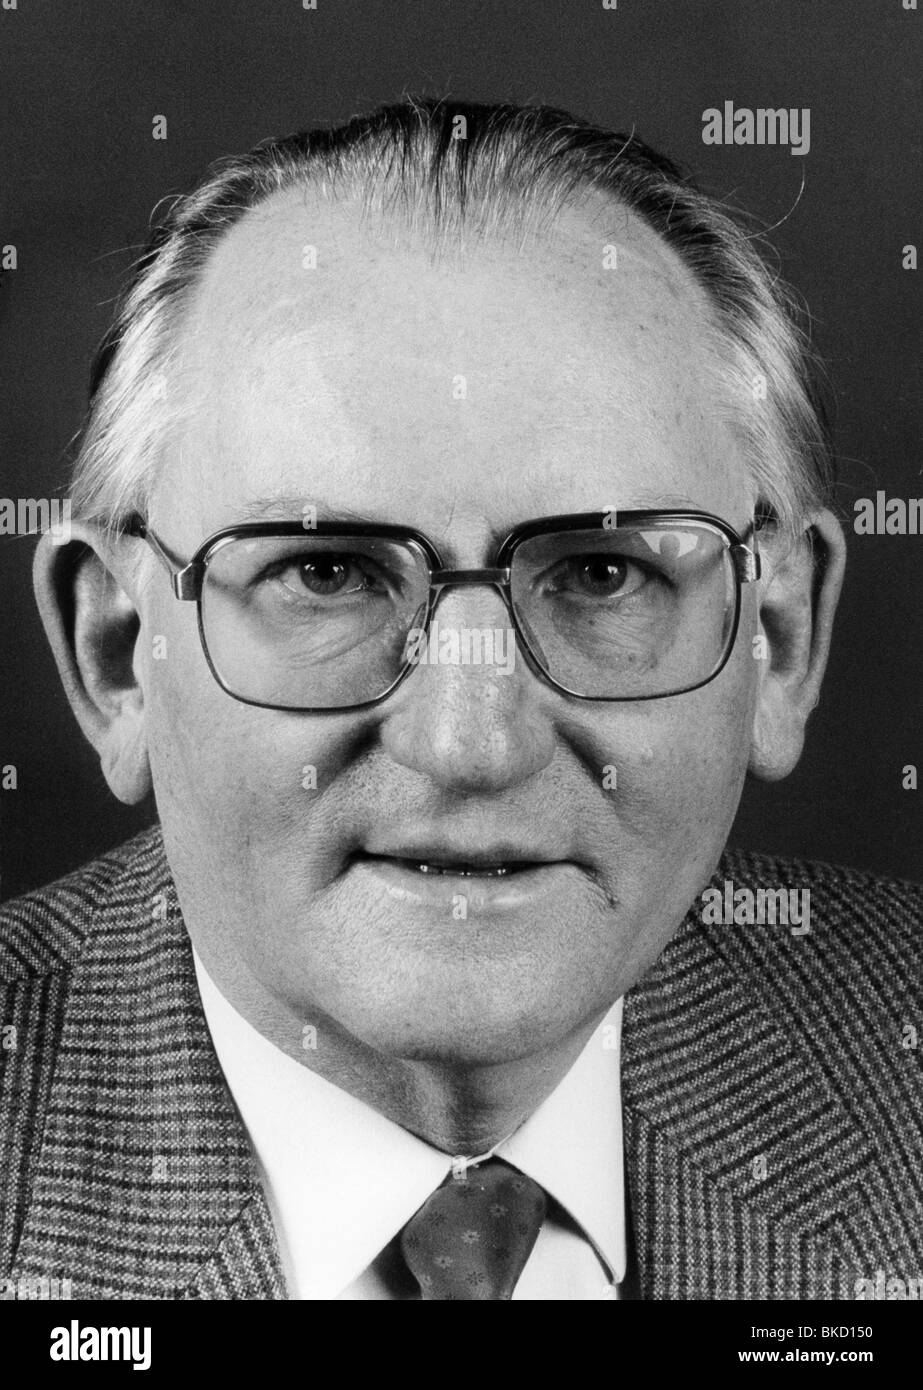 Pirkl, Fritz, 13.8.1925 - 19.8.1993, politico tedesco (CSU), membro del Parlamento europeo 24.7.1984 - 19.8.1993, portrait, 1980s, Foto Stock